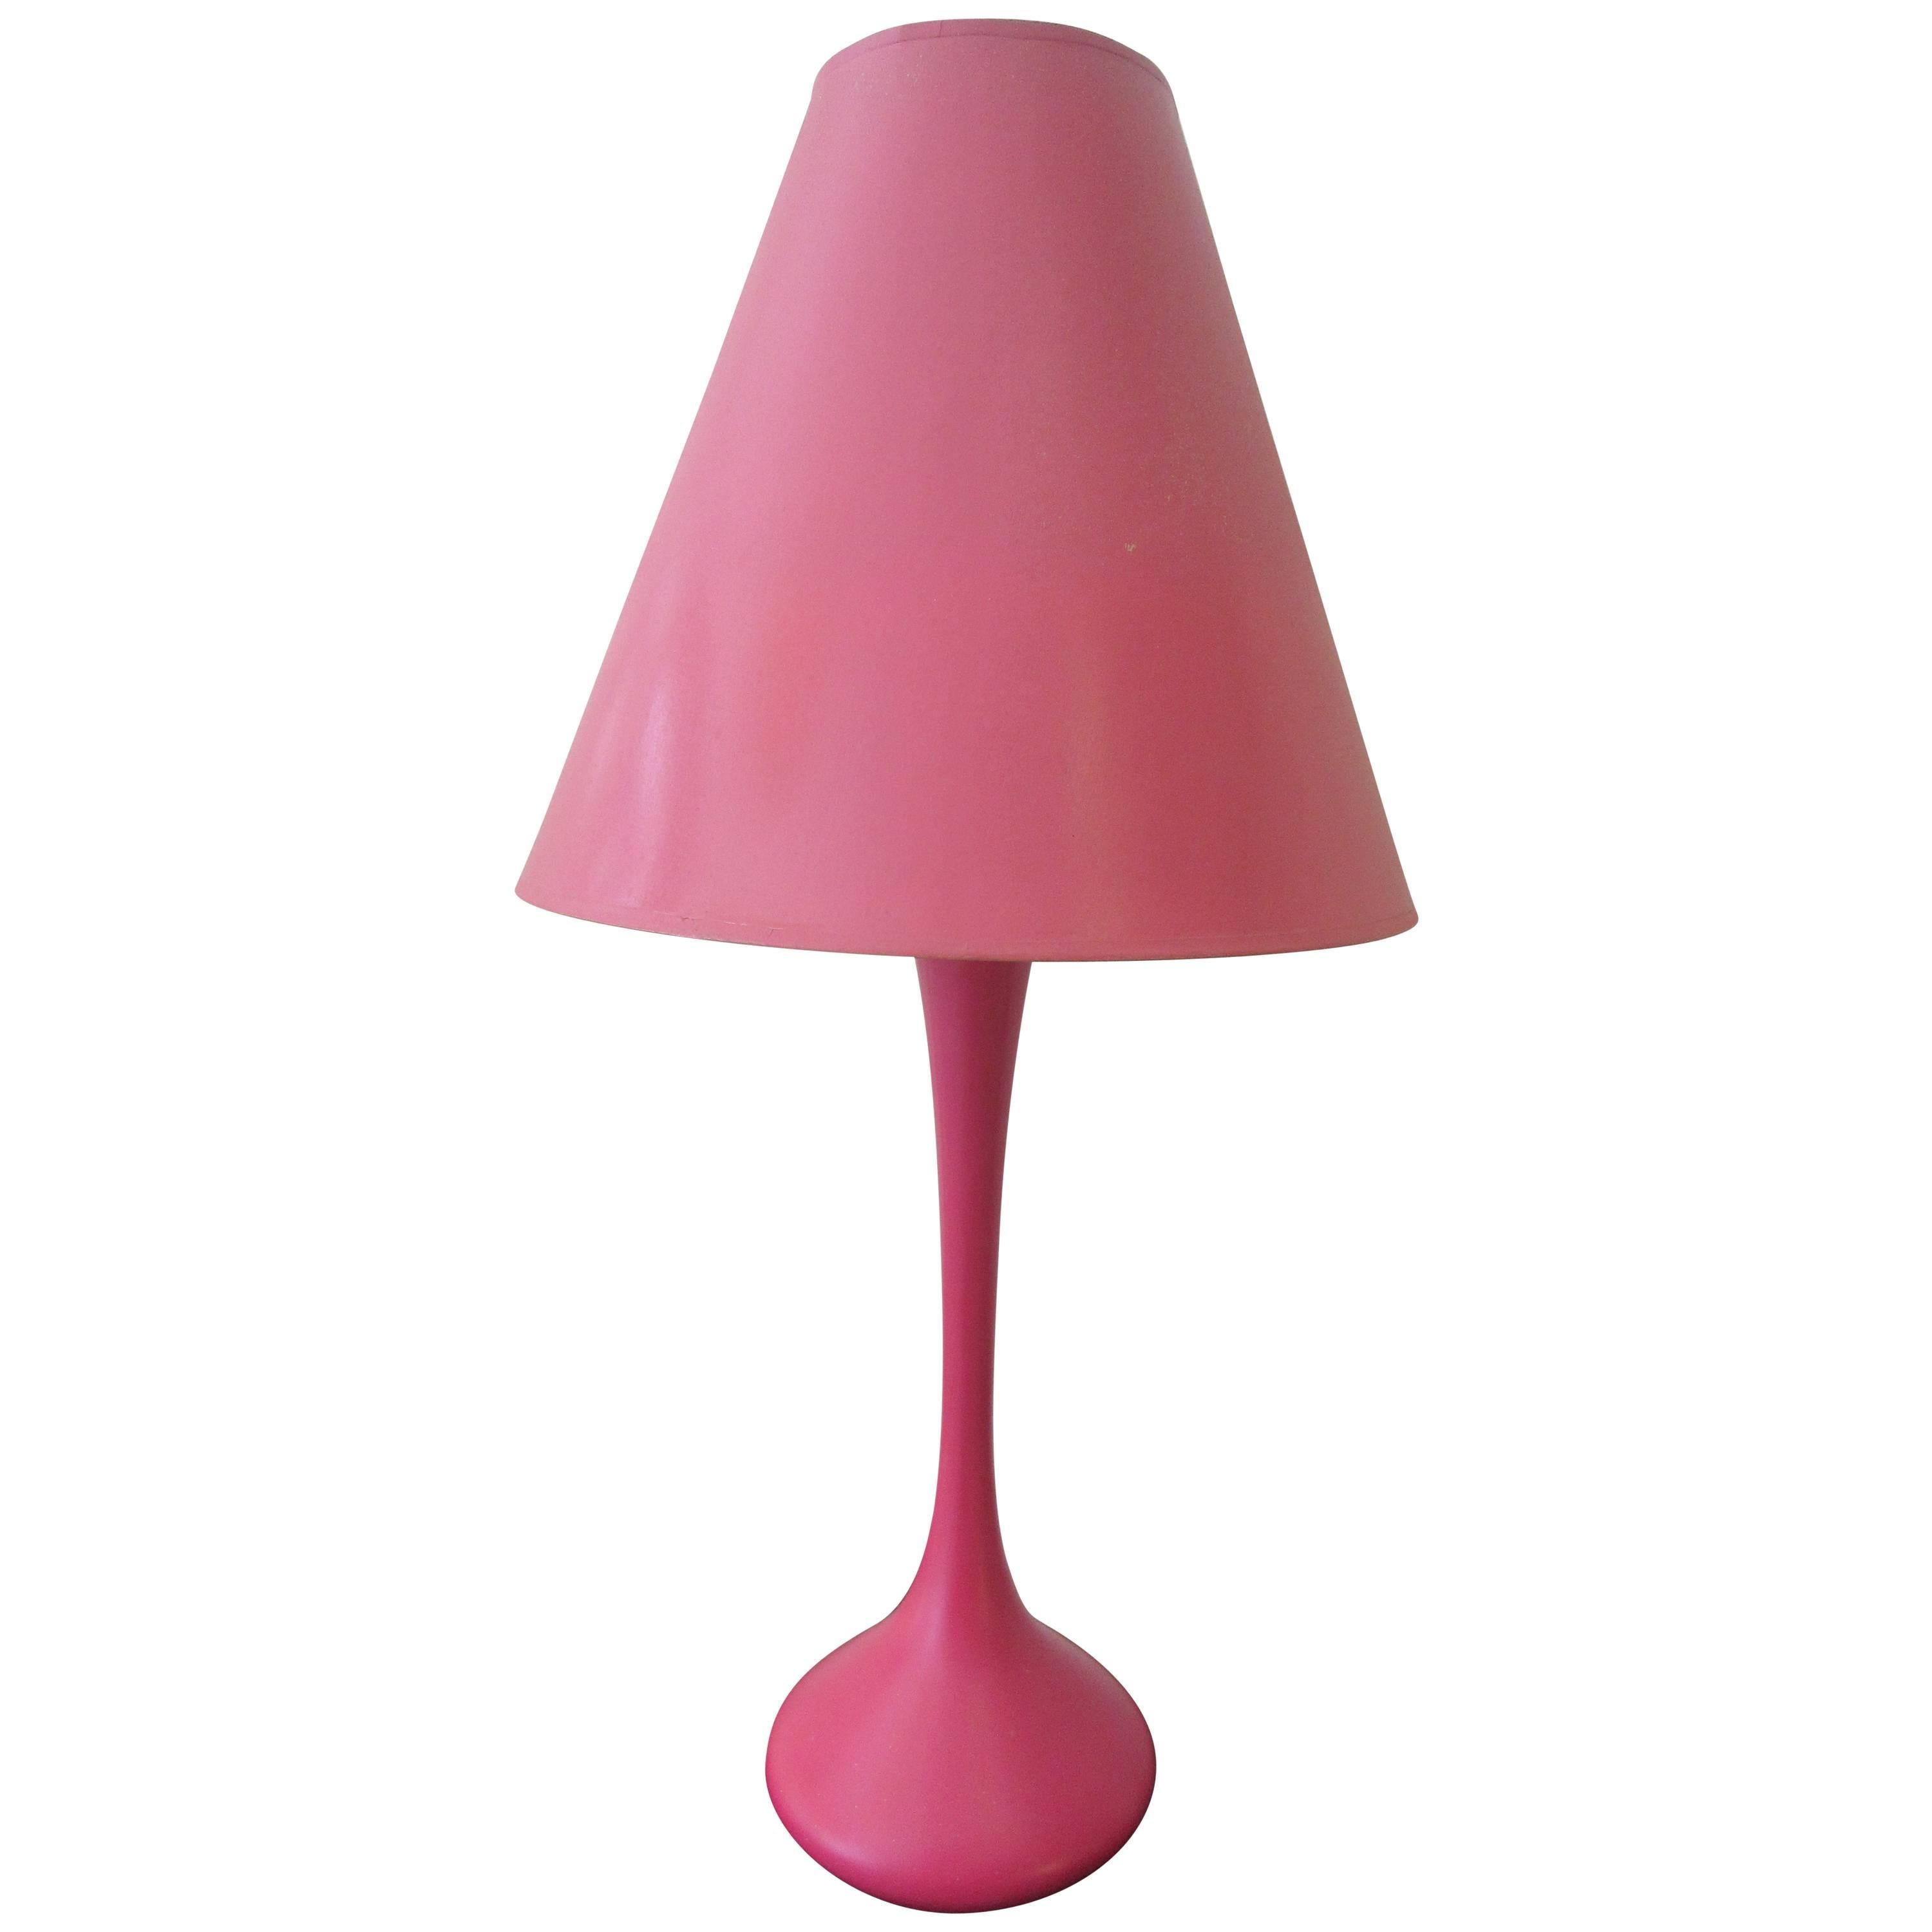 Laurel Genie Magenta or Pink Table Lamp